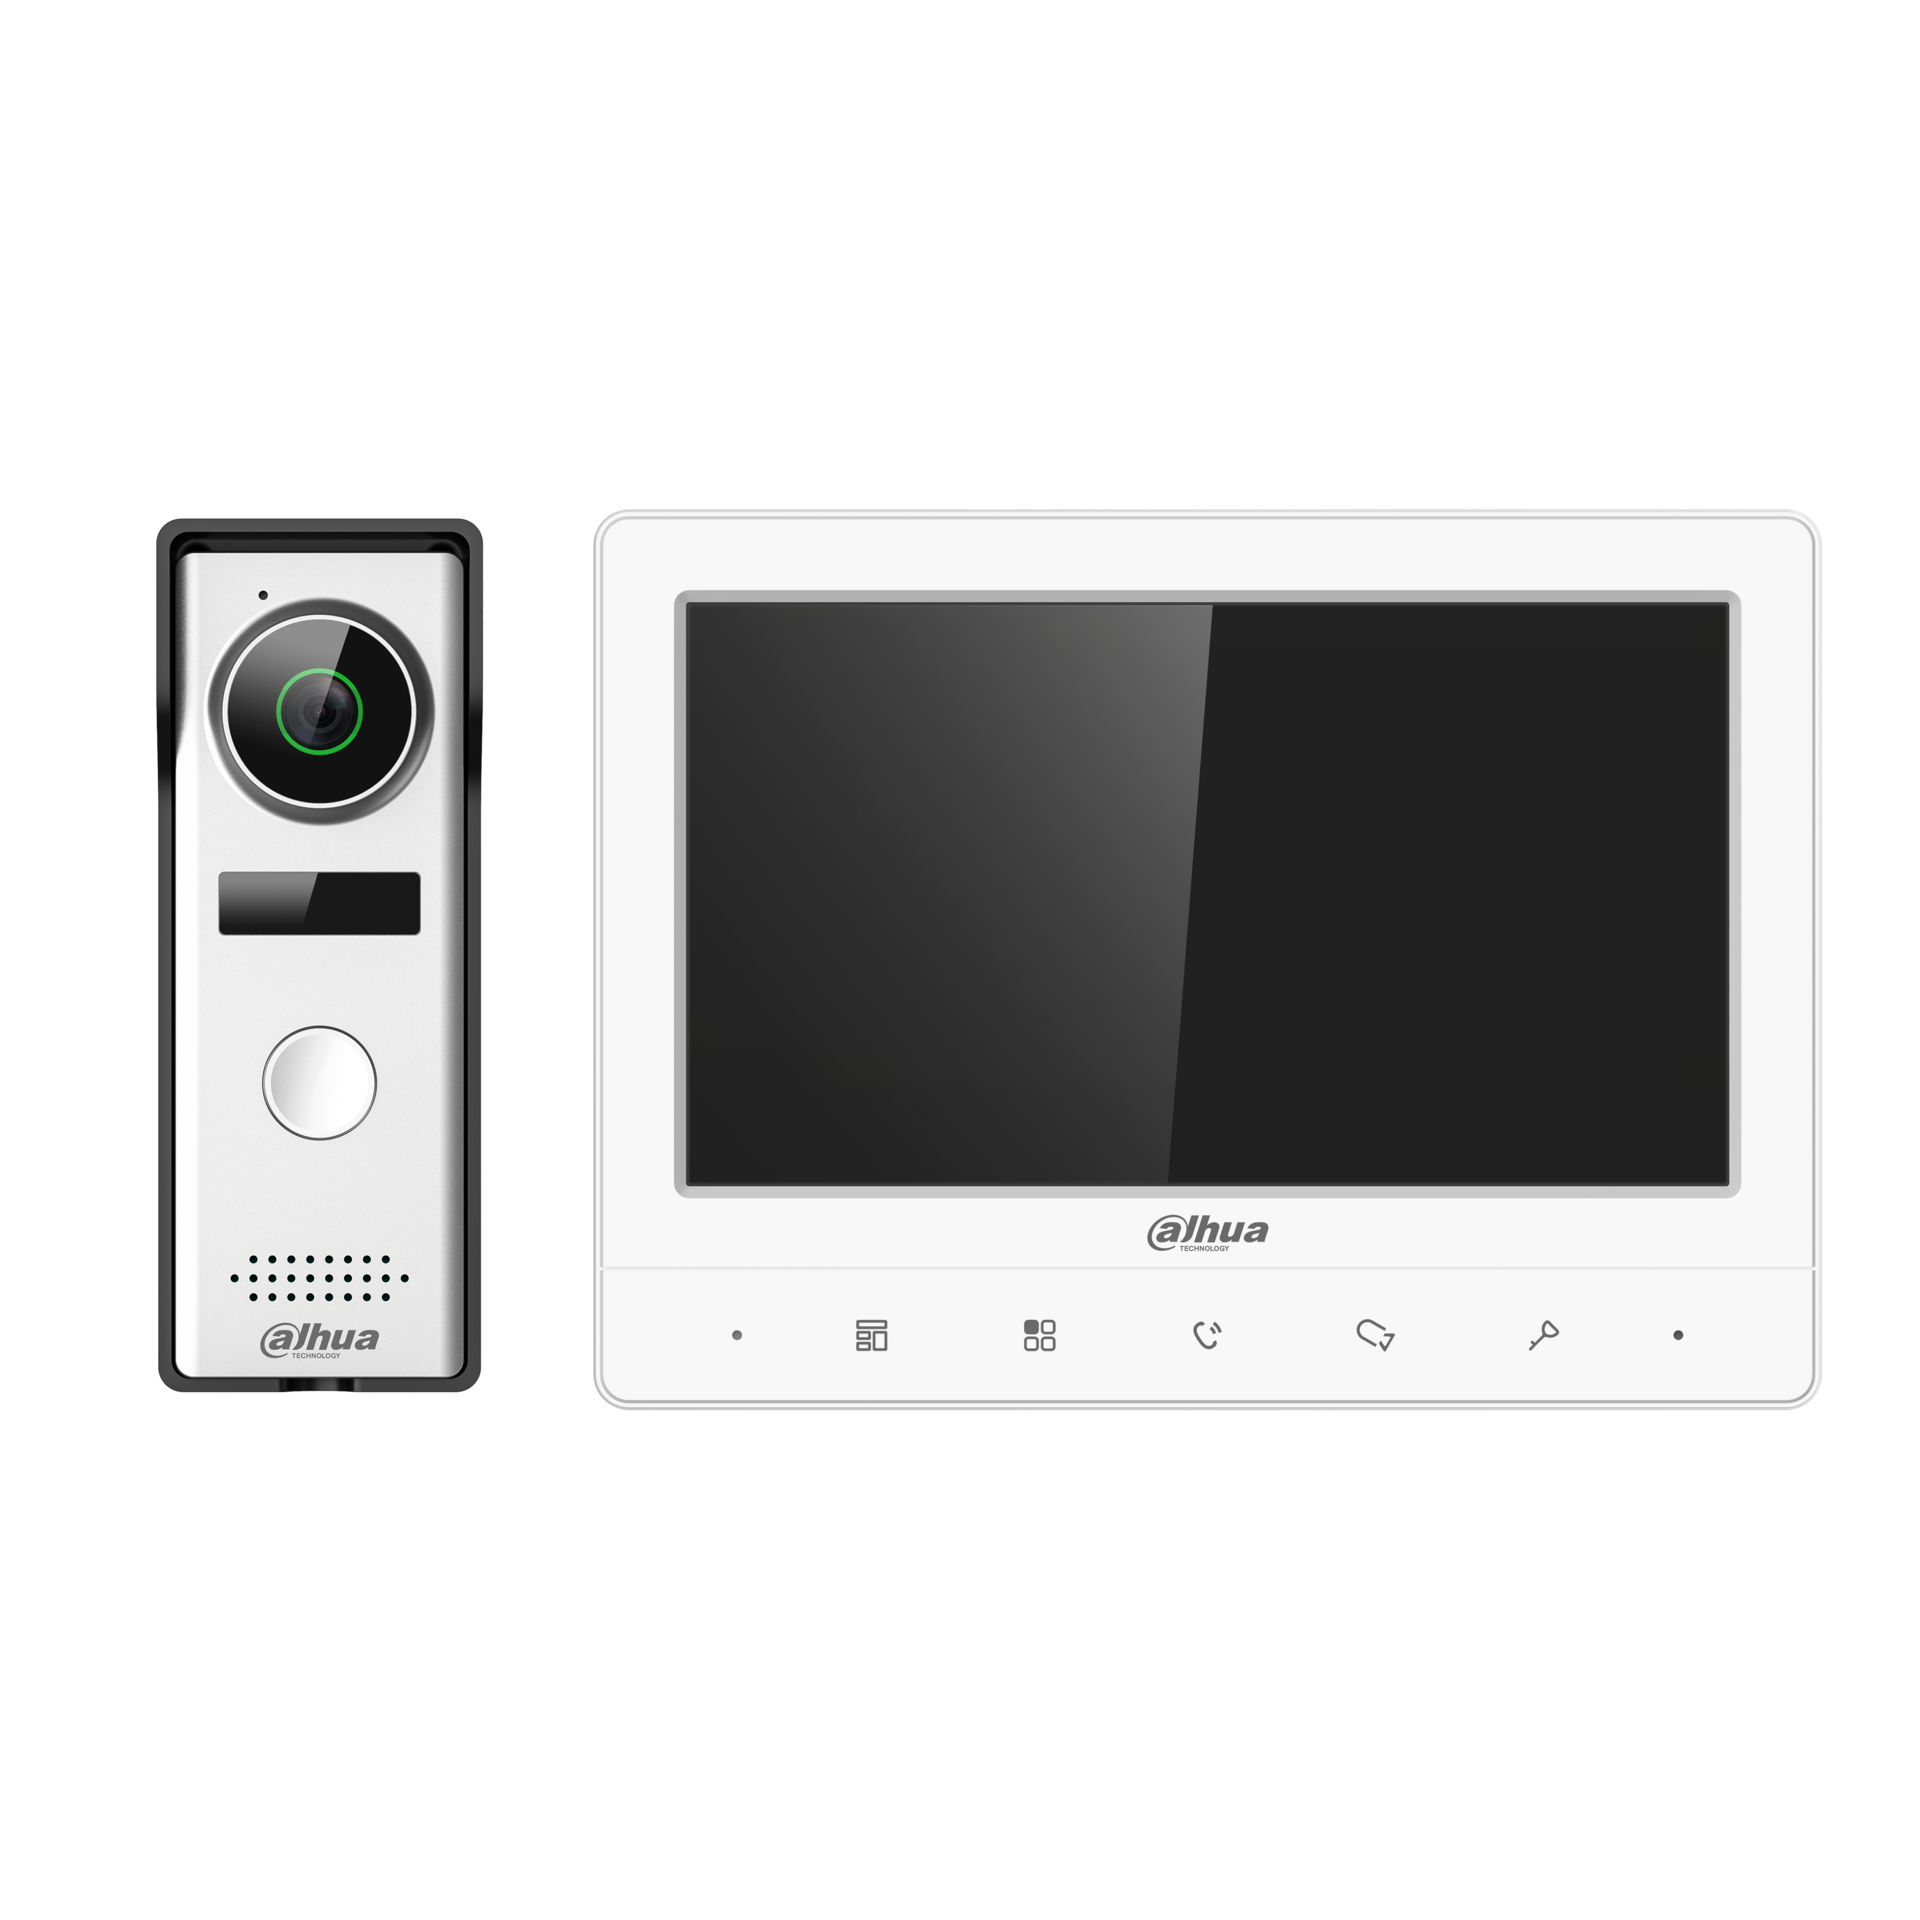 Dahua video intercom KTA02 Analoge kit met video deurbel en monitor 4 draads aansluiting. - Avicam